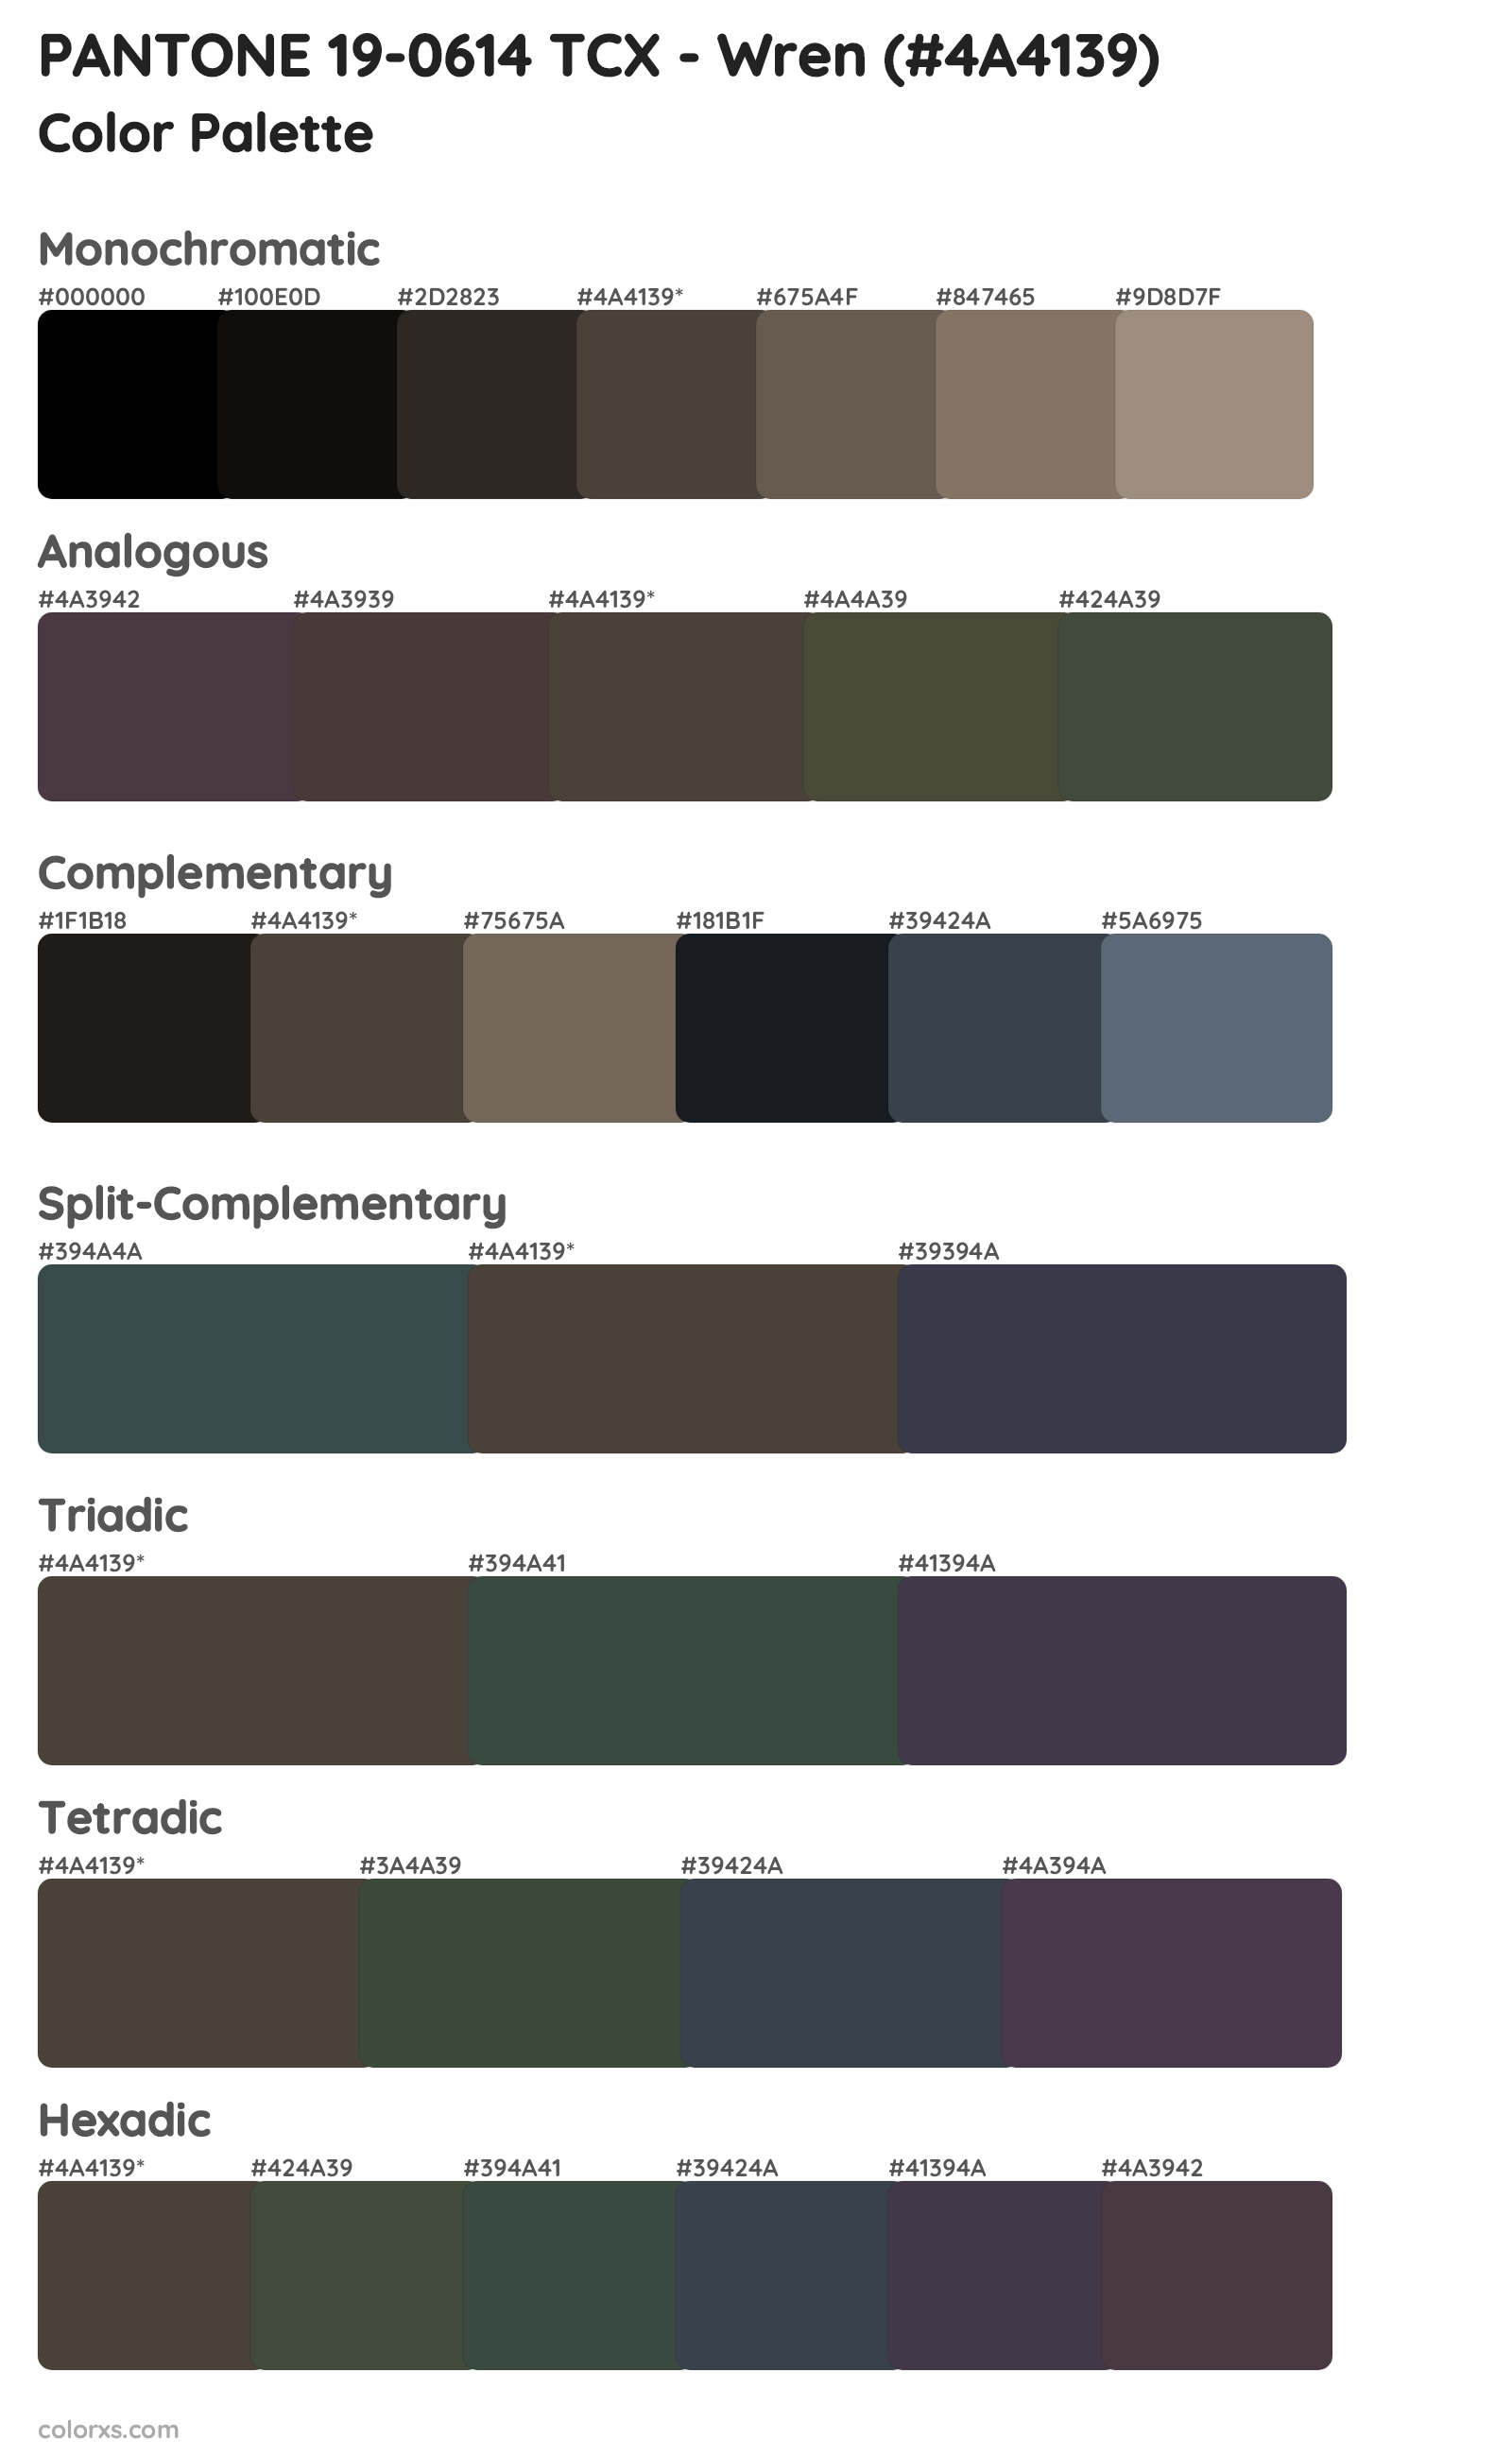 PANTONE 19-0614 TCX - Wren Color Scheme Palettes